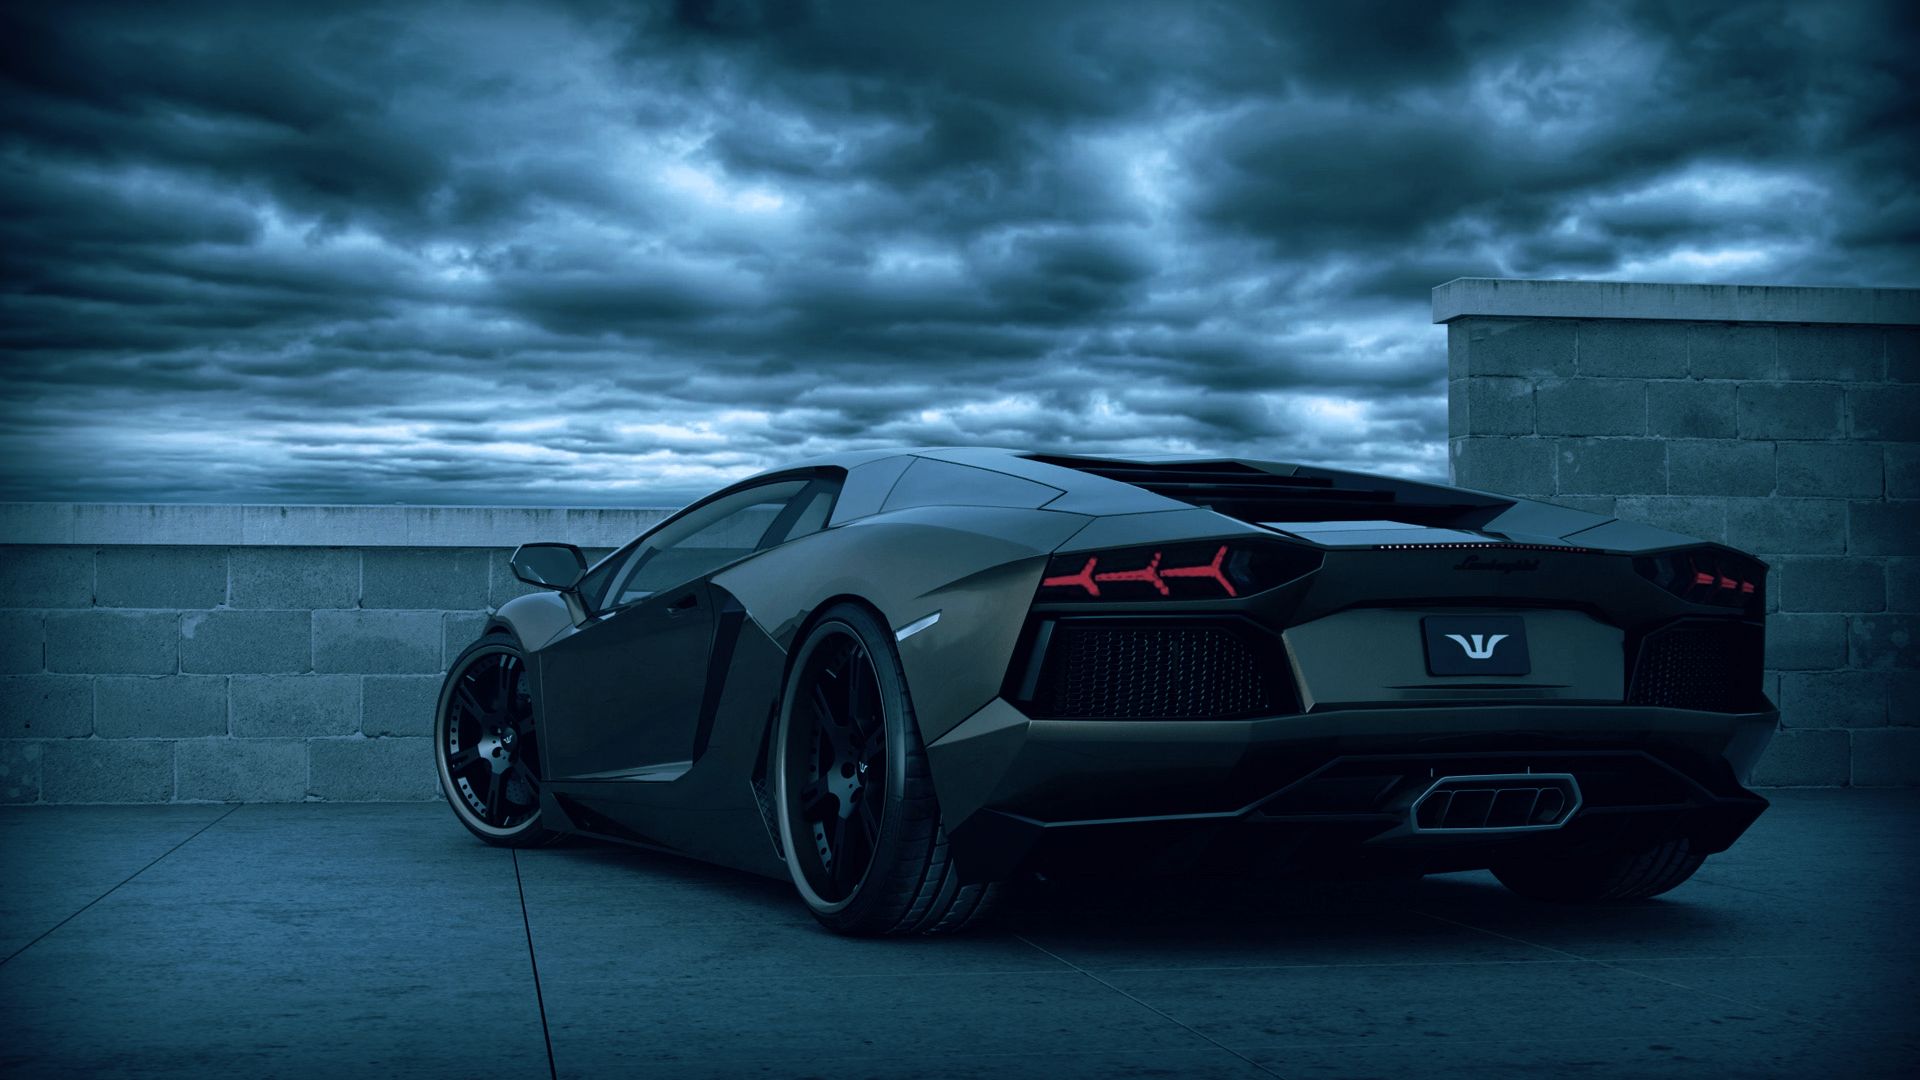 Lamborghini Dark wallpapers HD | Wallpapers, Backgrounds, Images ...